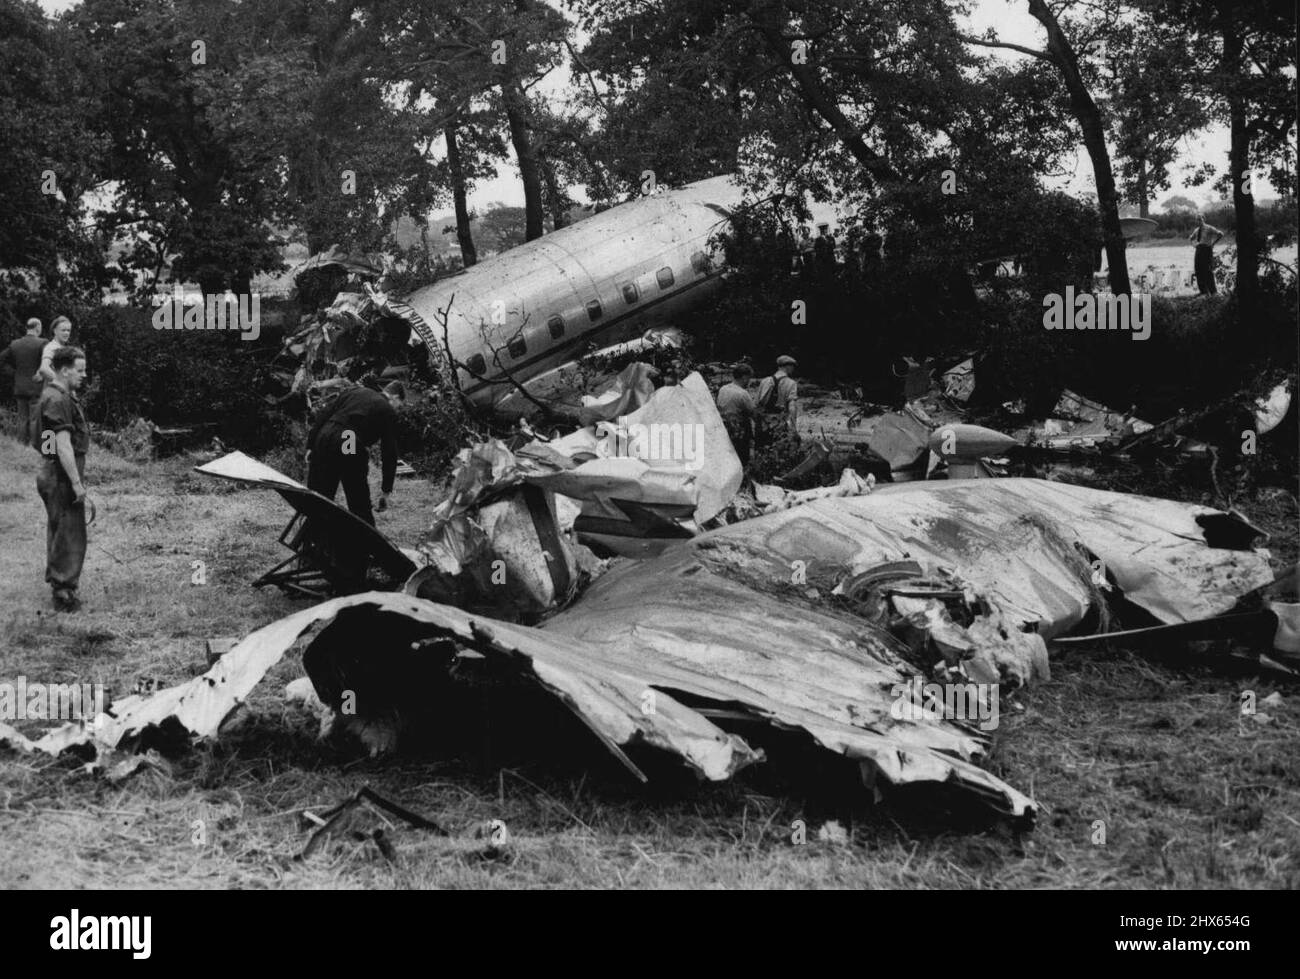 Le plus grand avion terrestre de Grande-Bretagne s'écrase sur le vol d'essai -- Une vue générale de l'Avro Tudor II écrasé, qui a cassé le dos sur son vol d'essai. Lorsque le plus grand avion terrestre de la Grande-Bretagne, l'Avro TUDOR II s'est écrasé à Woodford Airfield, Cheshire hier, M. Roy Chadwick, l'un des plus grands avions conçus de Grande-Bretagne et trois autres hommes ont été tués. L'avion venait de descendre pour un vol d'essai, il s'est levé cinquante pieds et s'est 'écrasé comme une pierre'. M. Chadwick était le concepteur du bombardier Lancaster. 24 août 1947. Banque D'Images